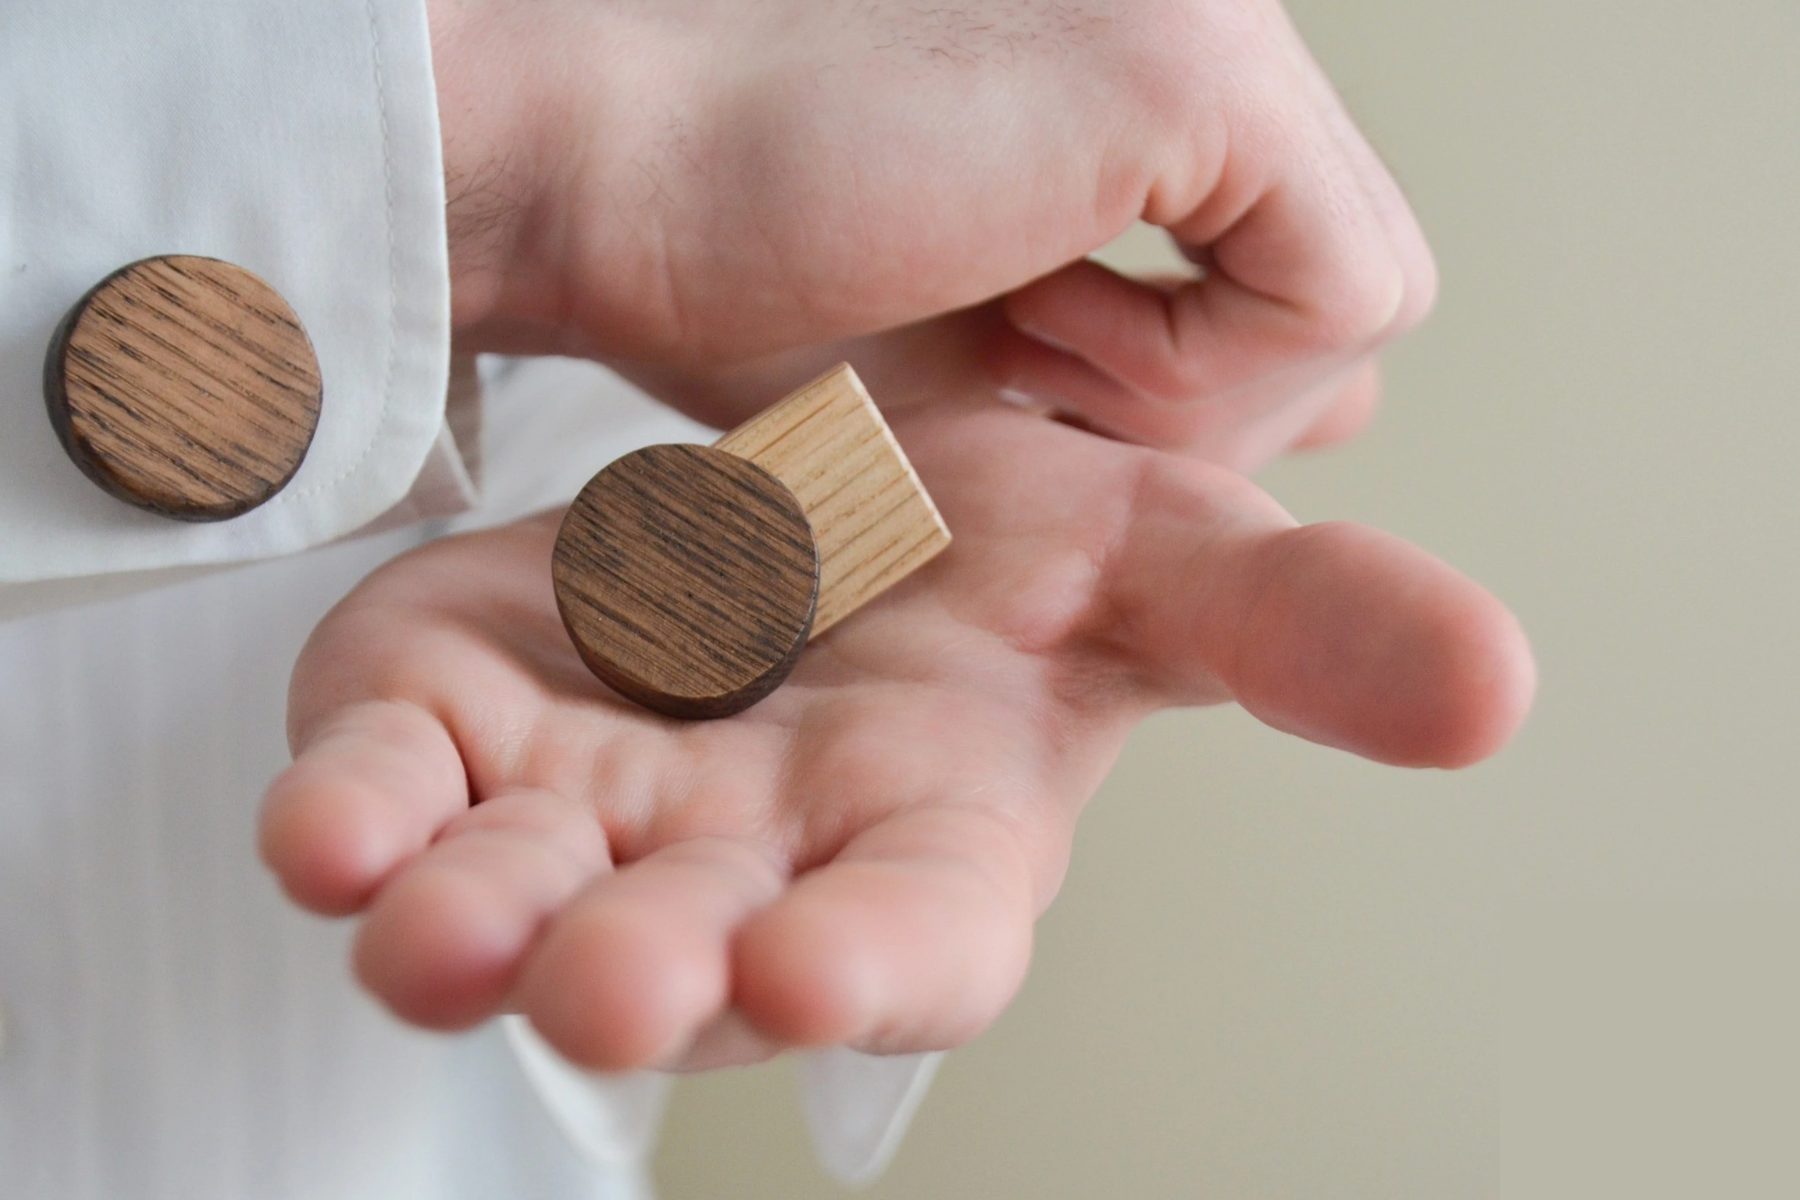 A pair of wooden cufflinks worn by a man